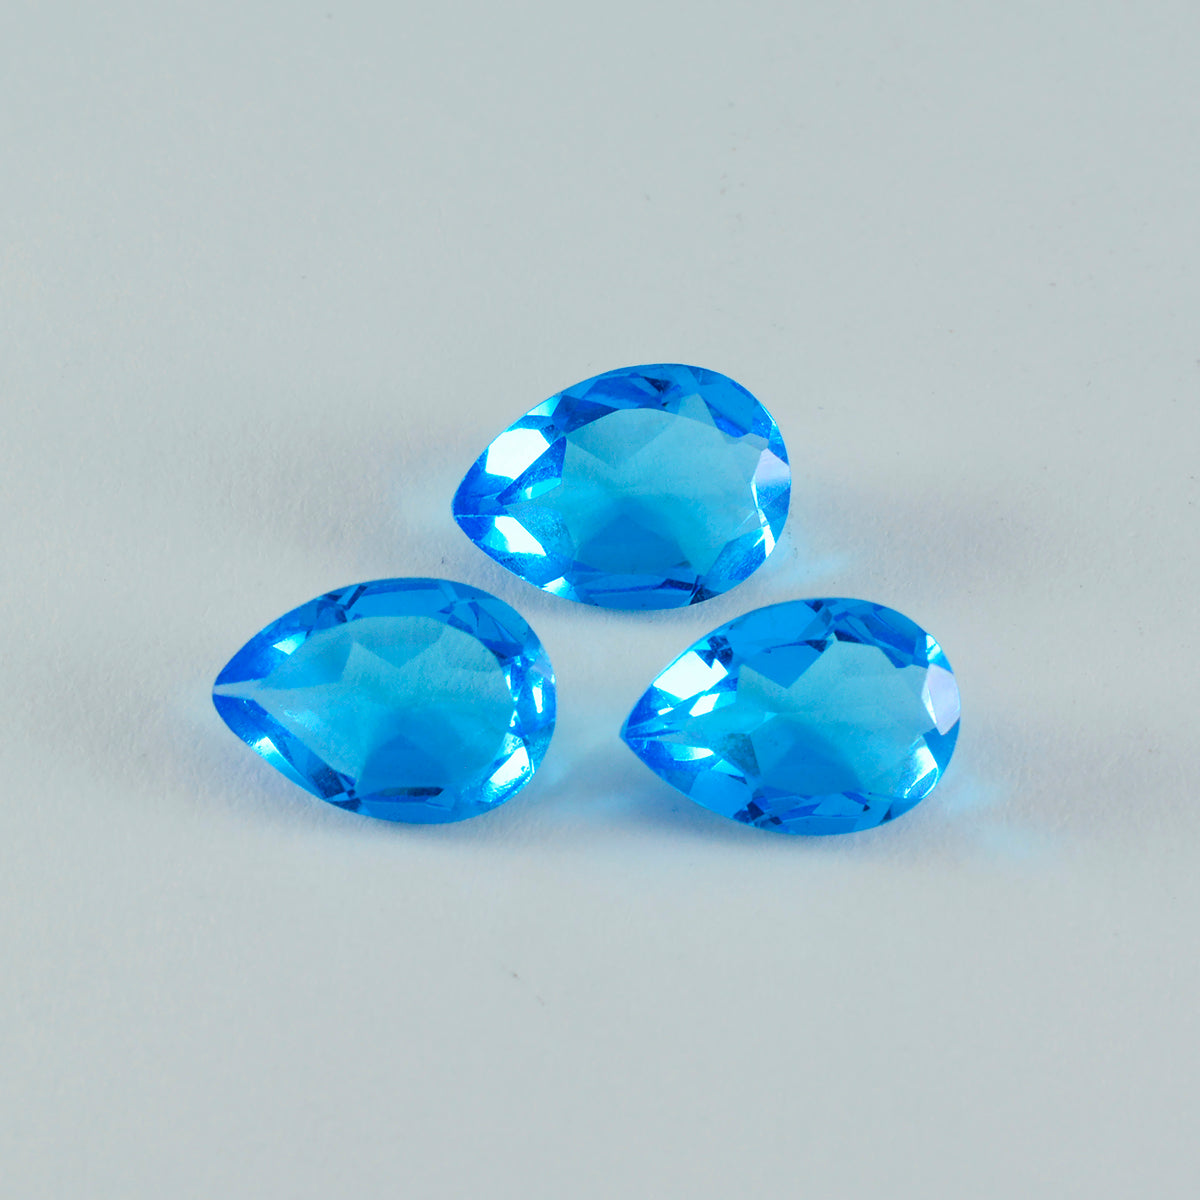 Riyogems 1 pieza de topacio azul CZ facetado 2x2 mm forma redonda gemas de calidad maravillosas